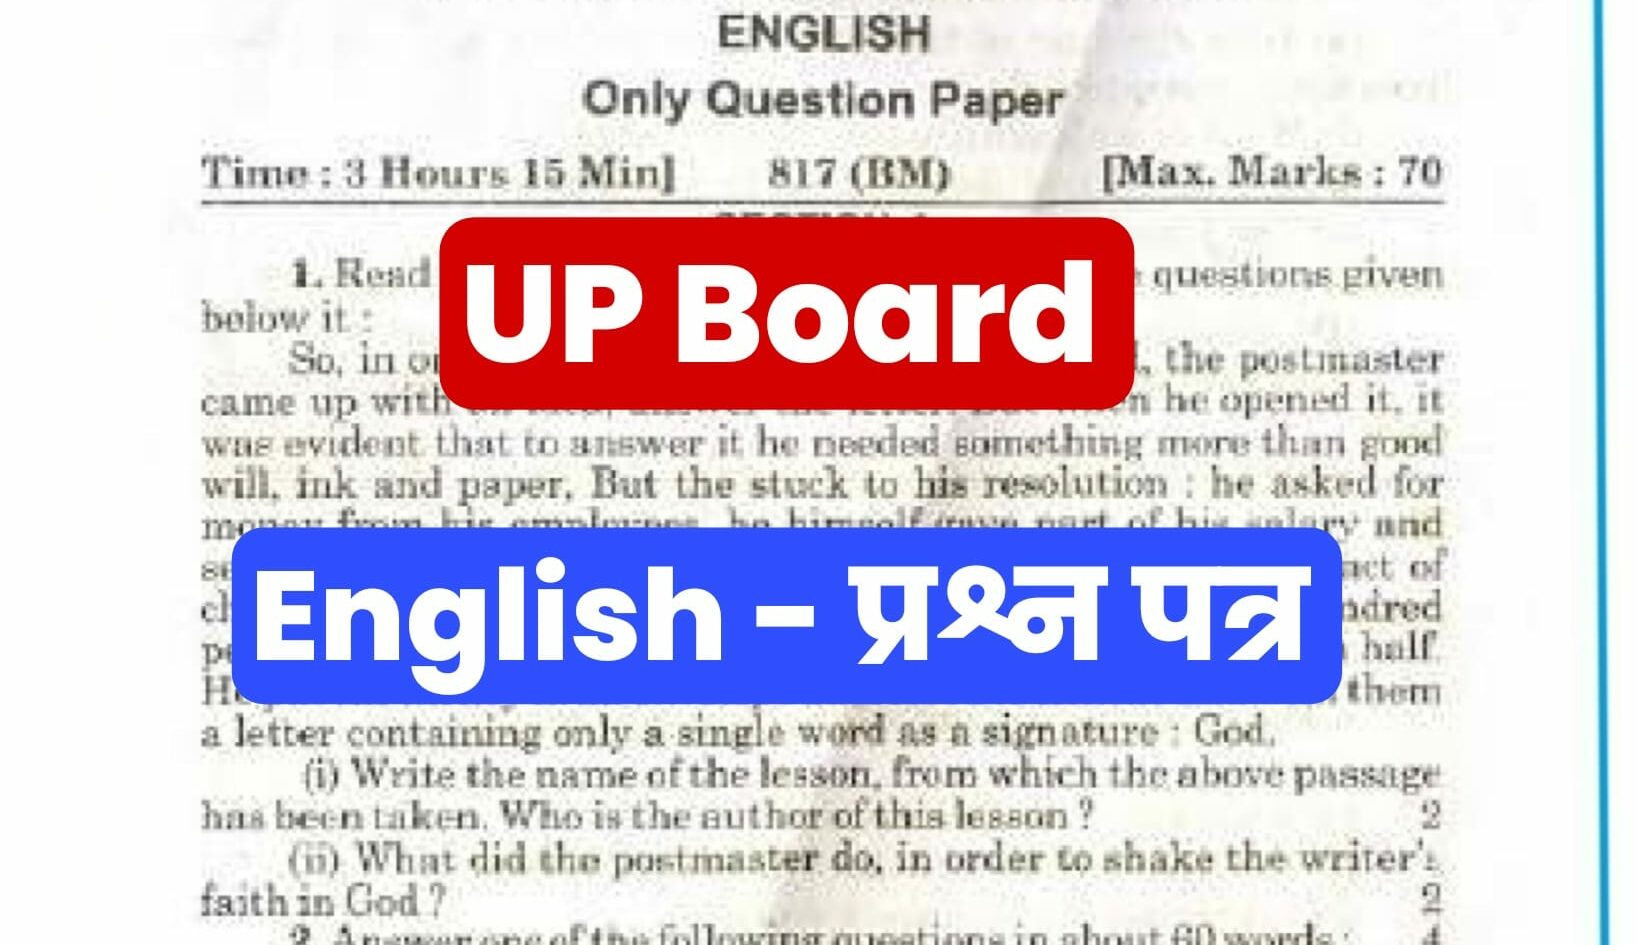 UP Board Class 10th English Previous Year Paper : अंग्रेजी विषय में पिछले साल आए थे ऐसे प्रश्न, पेपर करें डाउनलोड